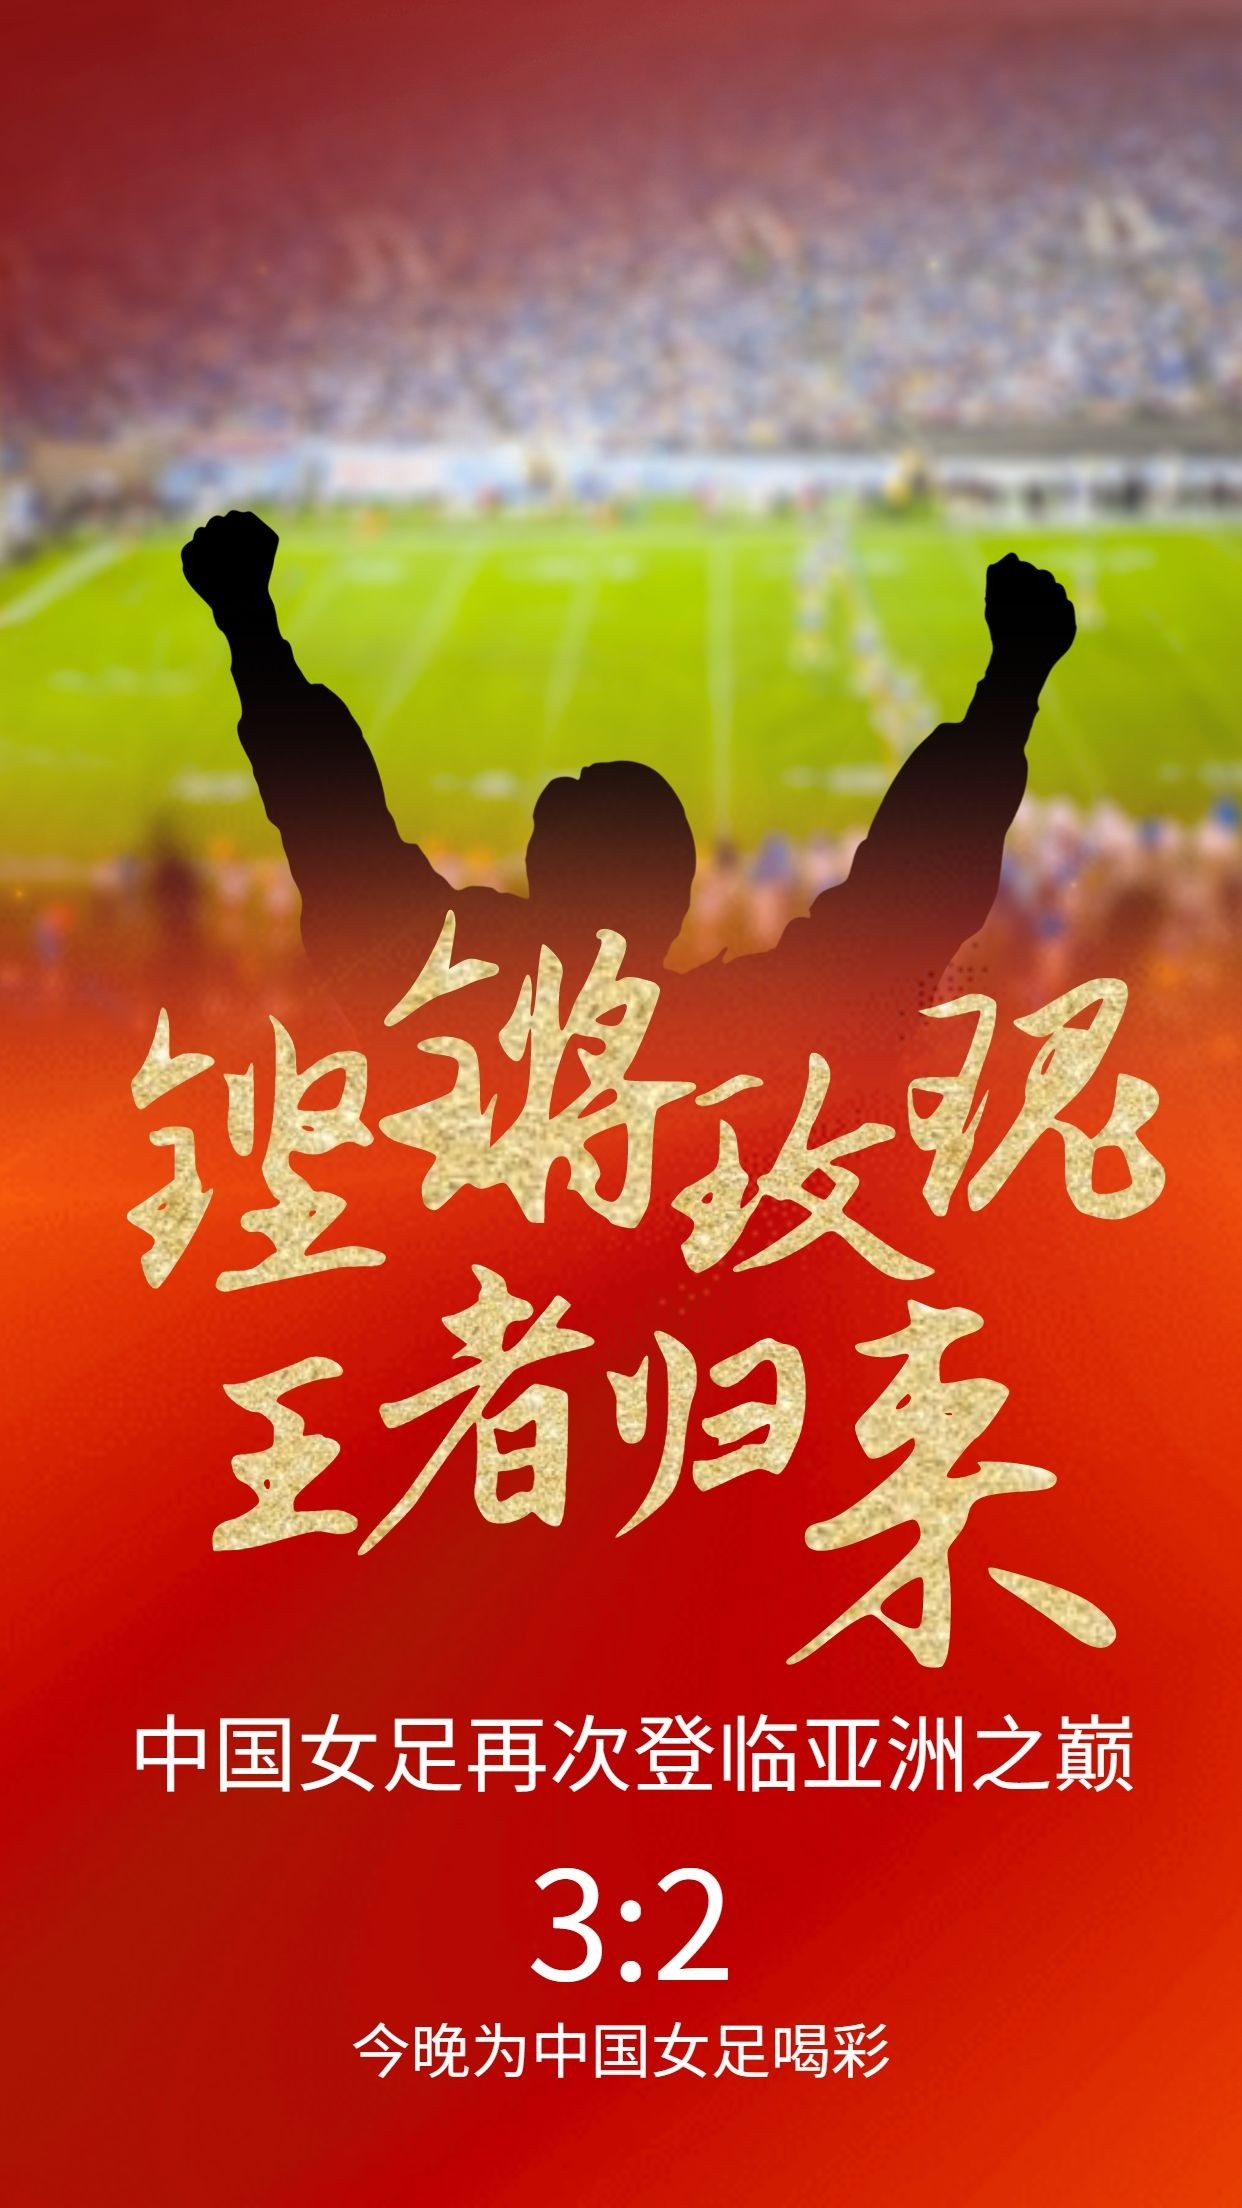 中国女足亚洲杯冠军喜报祝福海报预览效果